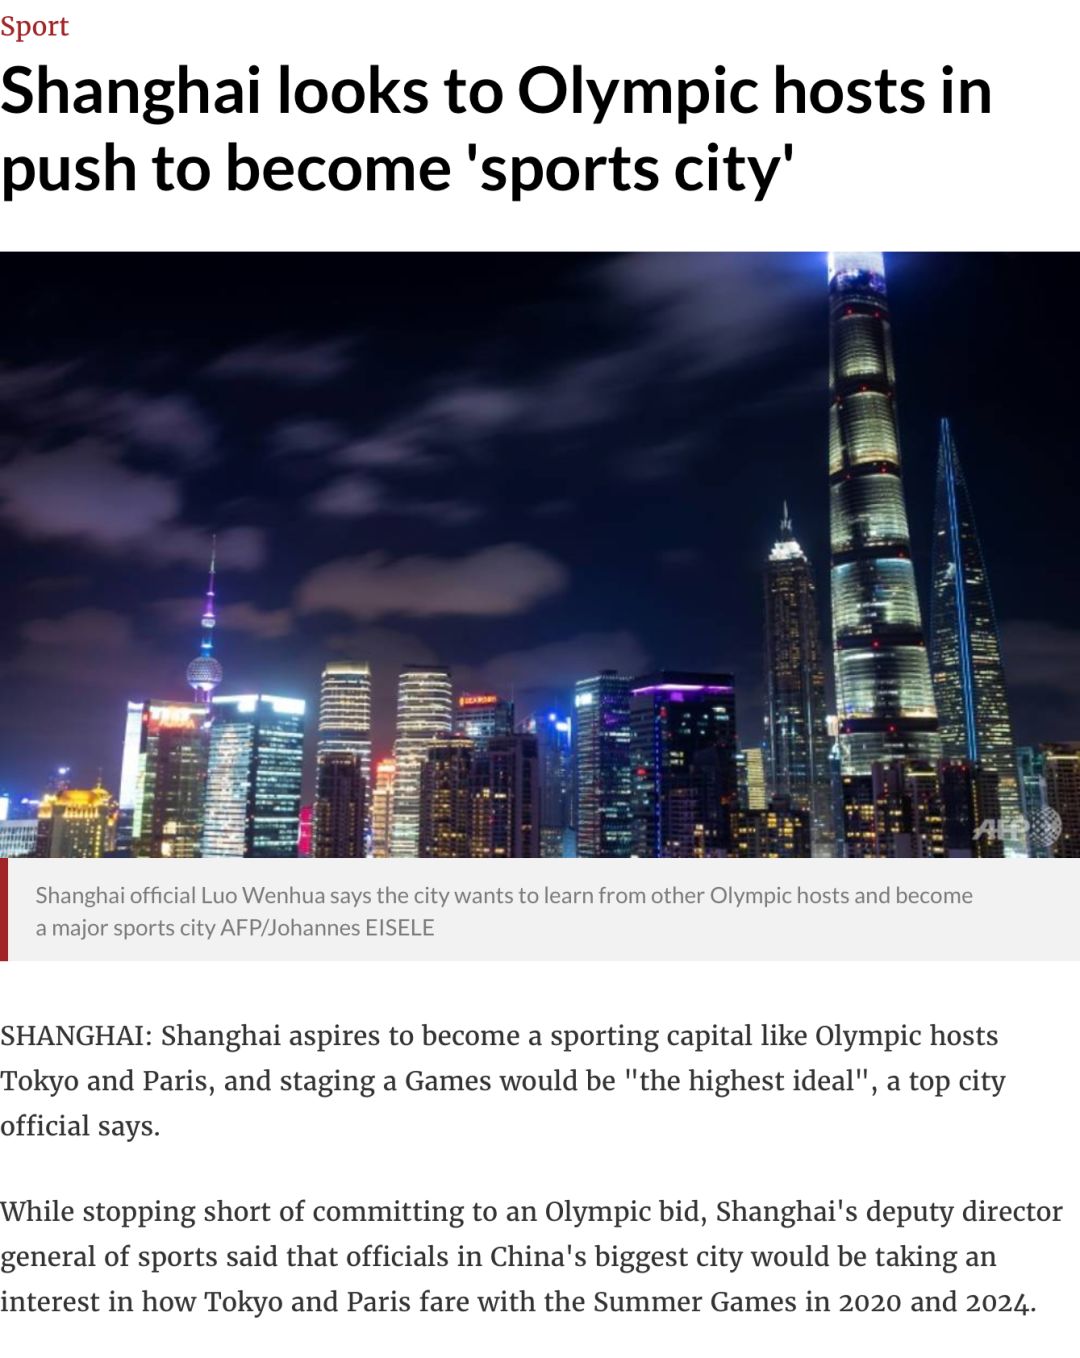 亚洲国家计划申办2032年奥运会,举办奥运会是